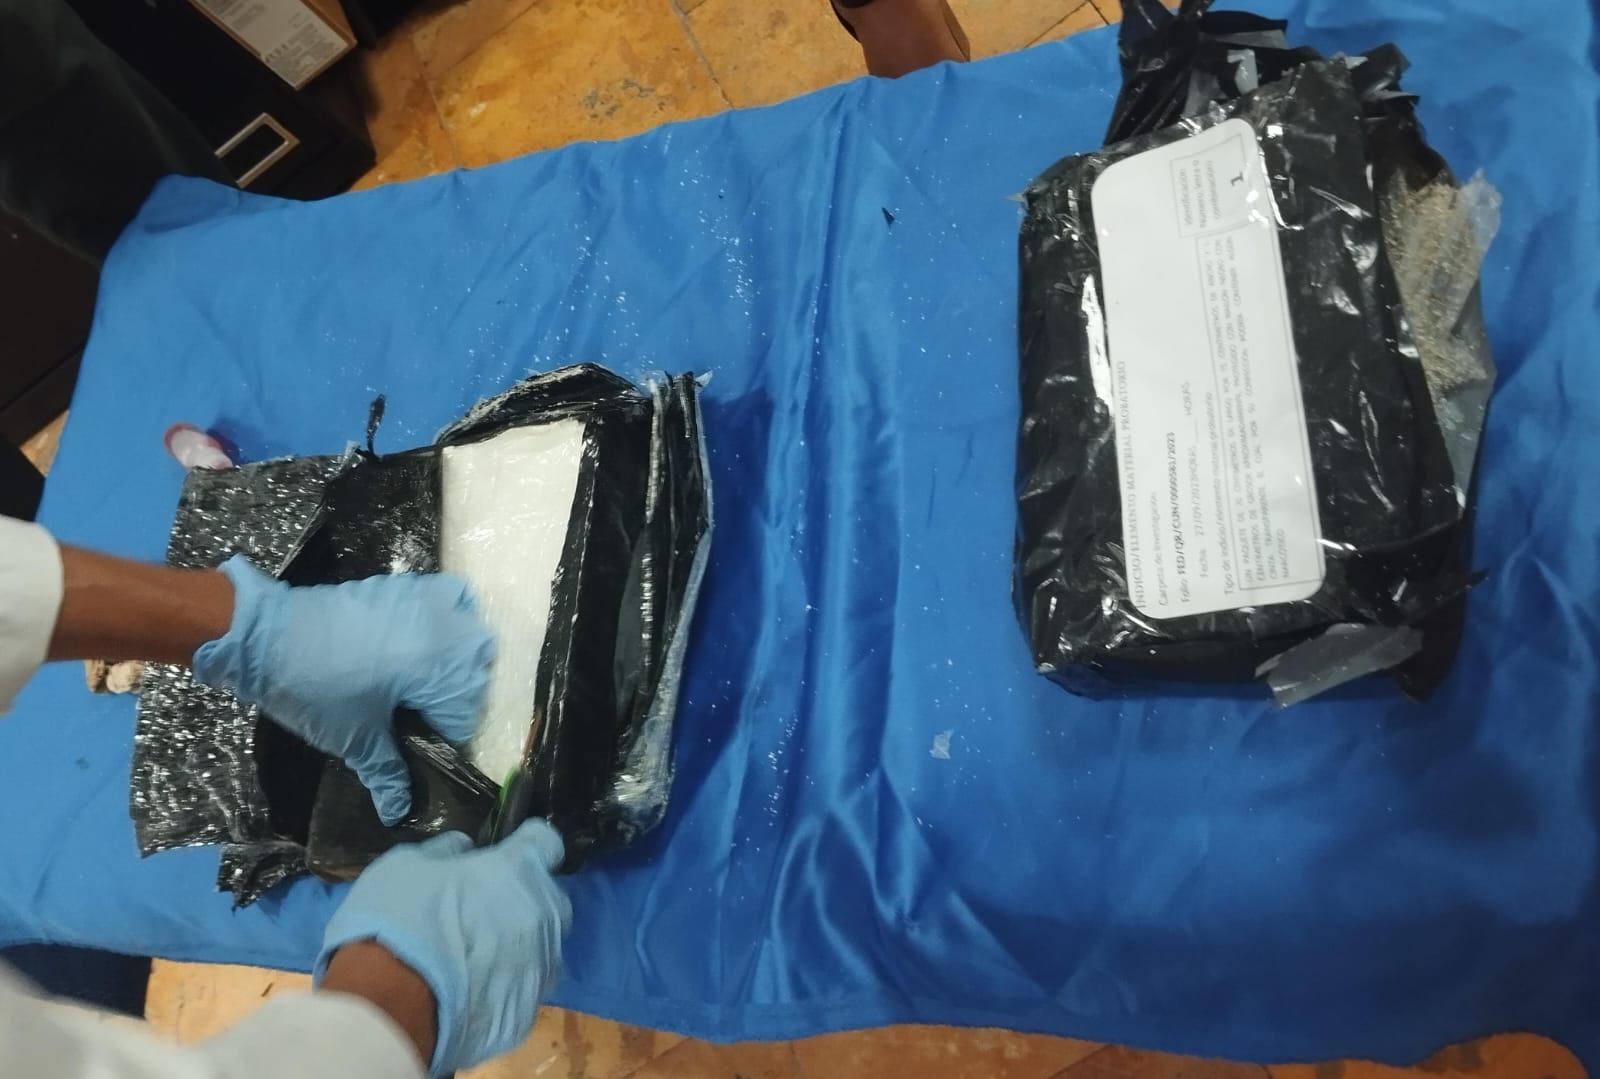 Hallan paquete con presunta cocaína en la costa de Cozumel